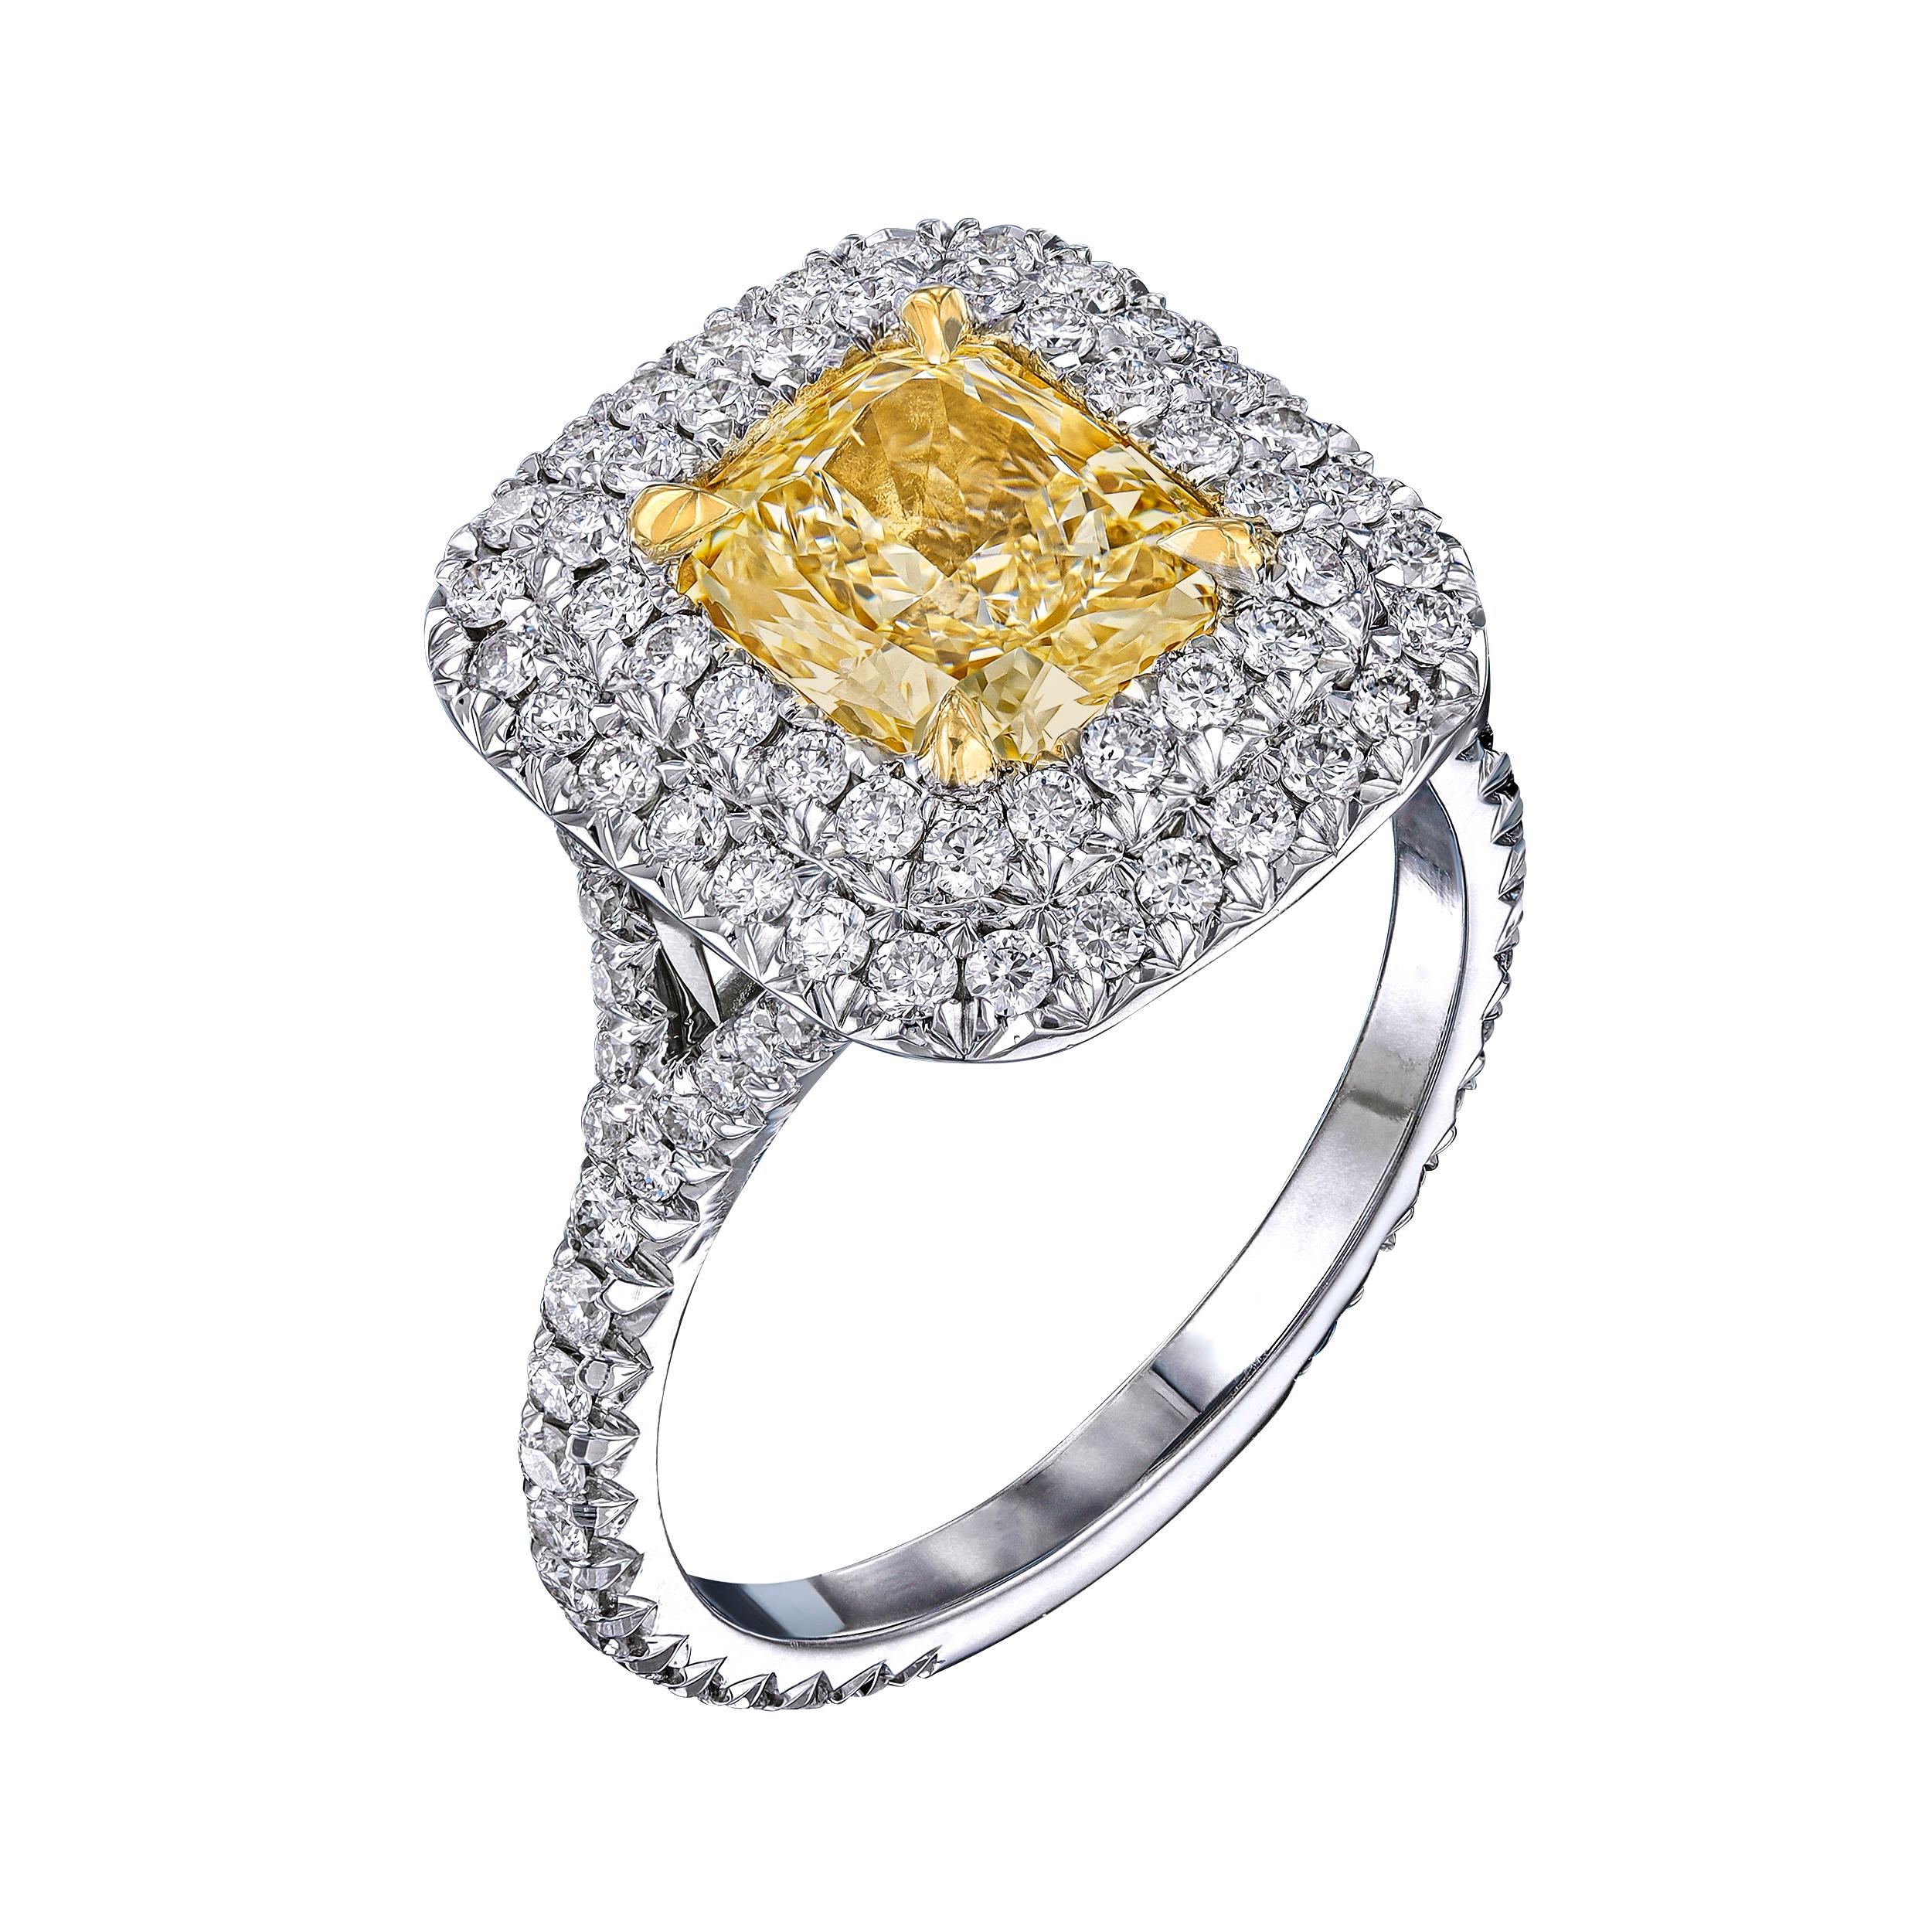 Diamantring mit GIA-Zertifikat, Nr.17420514. Details sind: Mittelstein: 2,03ct / Brillantschliff Fancy Light Yellow Diamant VS1, 7,57 x 6,58 x 4,44mm. / Seitliche Diamanten in Pave-Fassung: 0,97 ct, Brillantschliff: F-G VS2-SI1. 